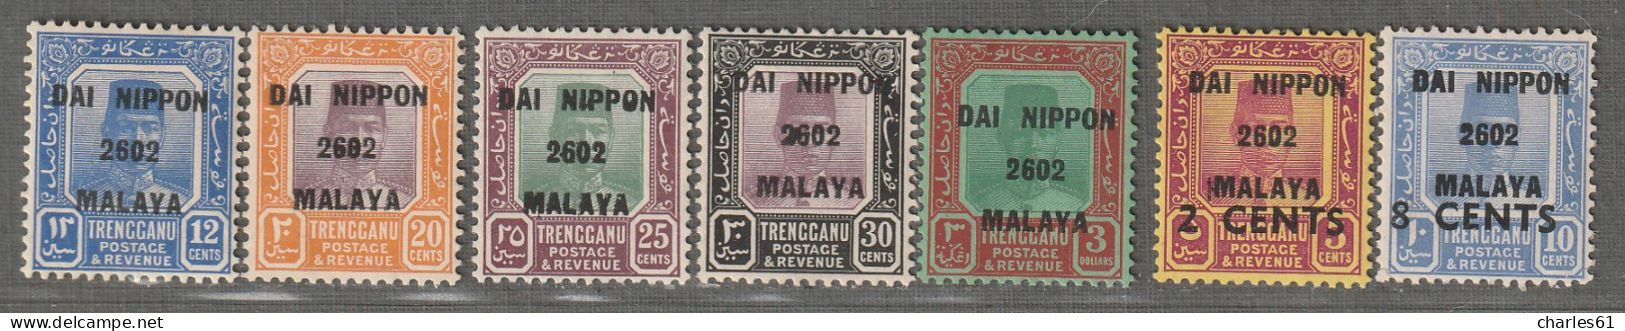 TRENGGANU - OCCUPATION JAPONAISE - N°29/35 * (1942) "Dai Nippon 2602 Malaya" - Japanse Bezetting